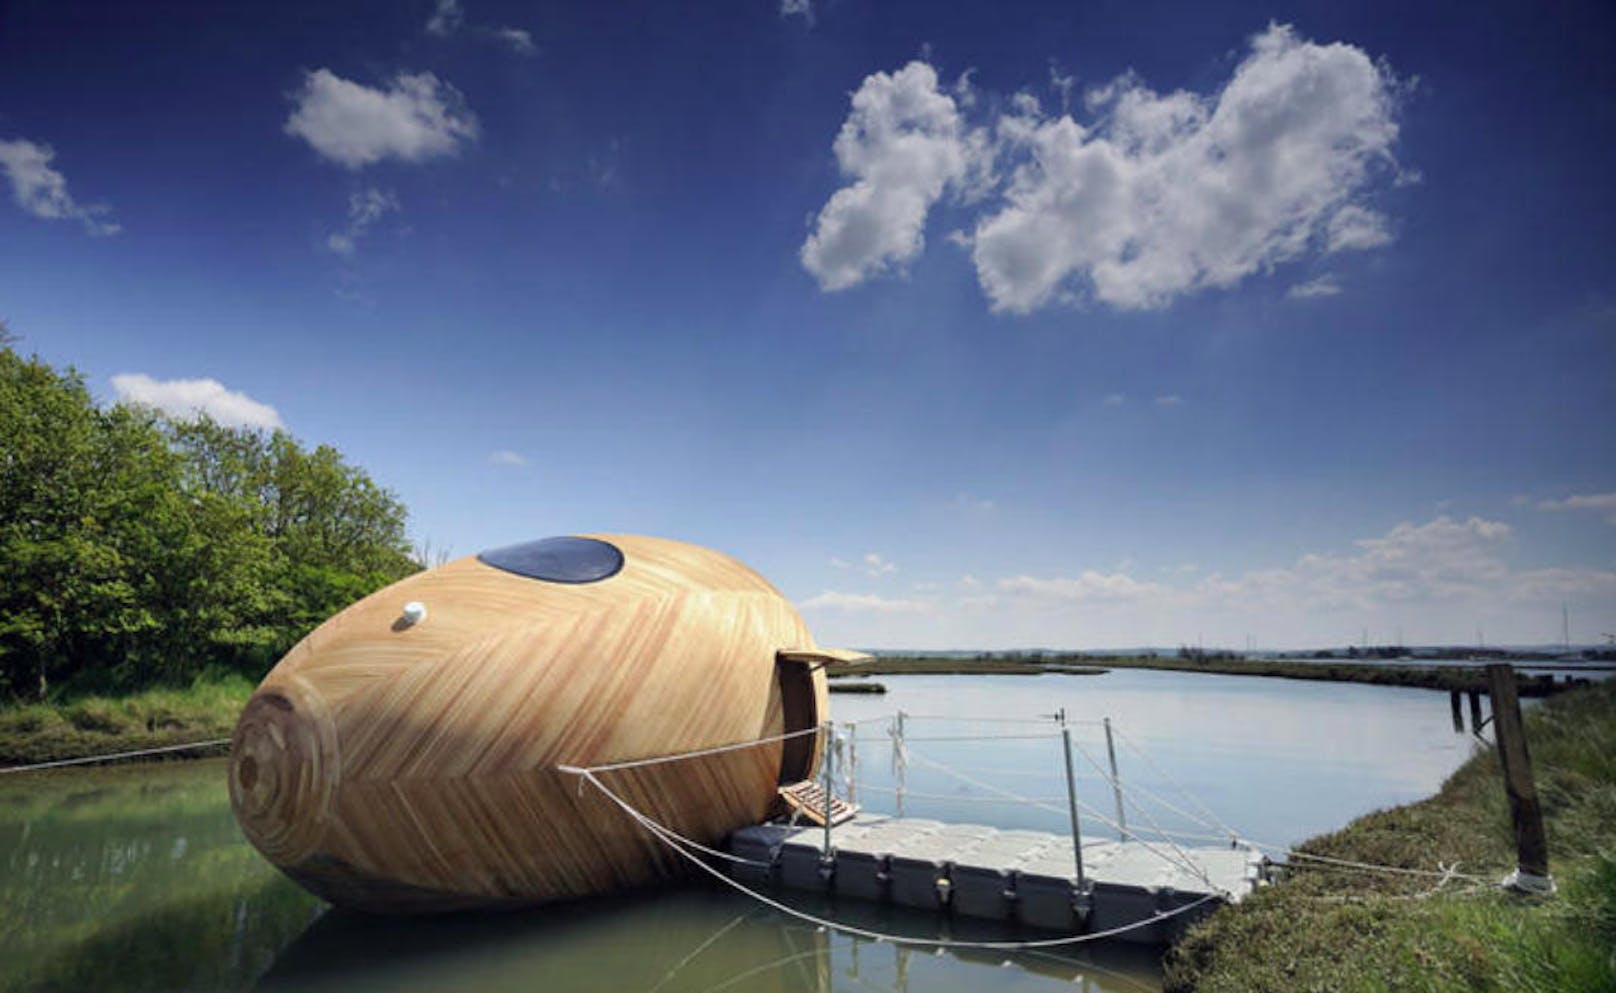 Wir präsentieren: Das Exbury Egg. Ein ausgefallenes Hausboot, gebaut für den Künstler Stephen Turner.